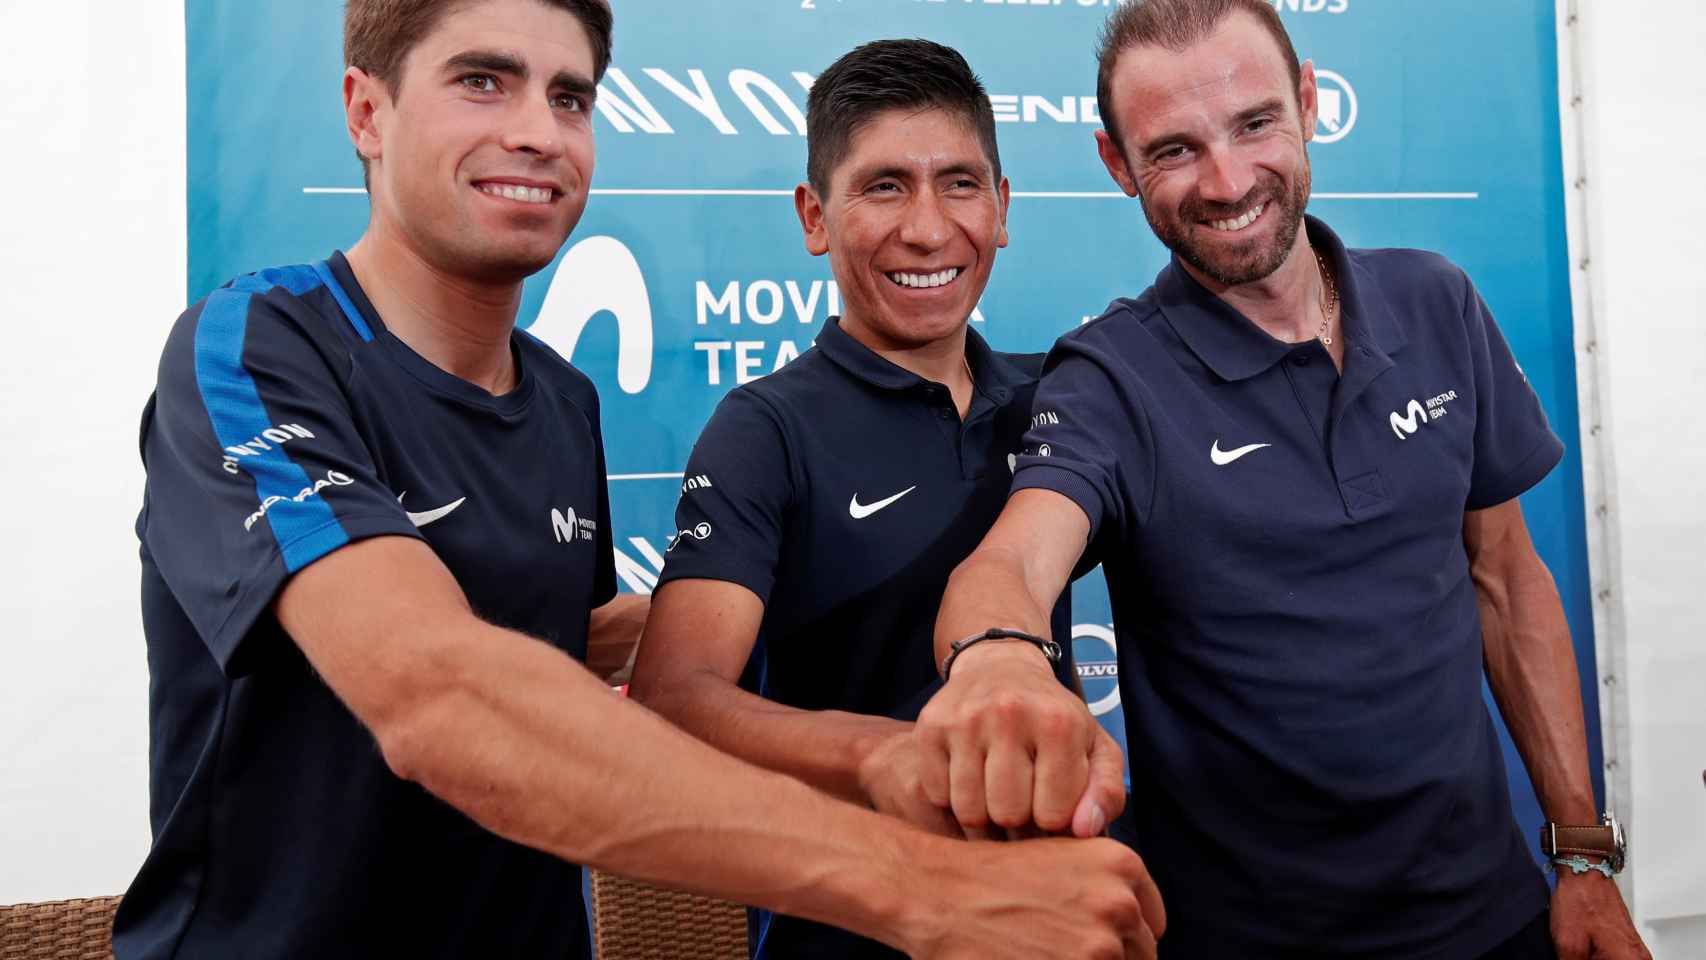 Landa, Quintana y Valverde en la previa del Tour de Francia 2018